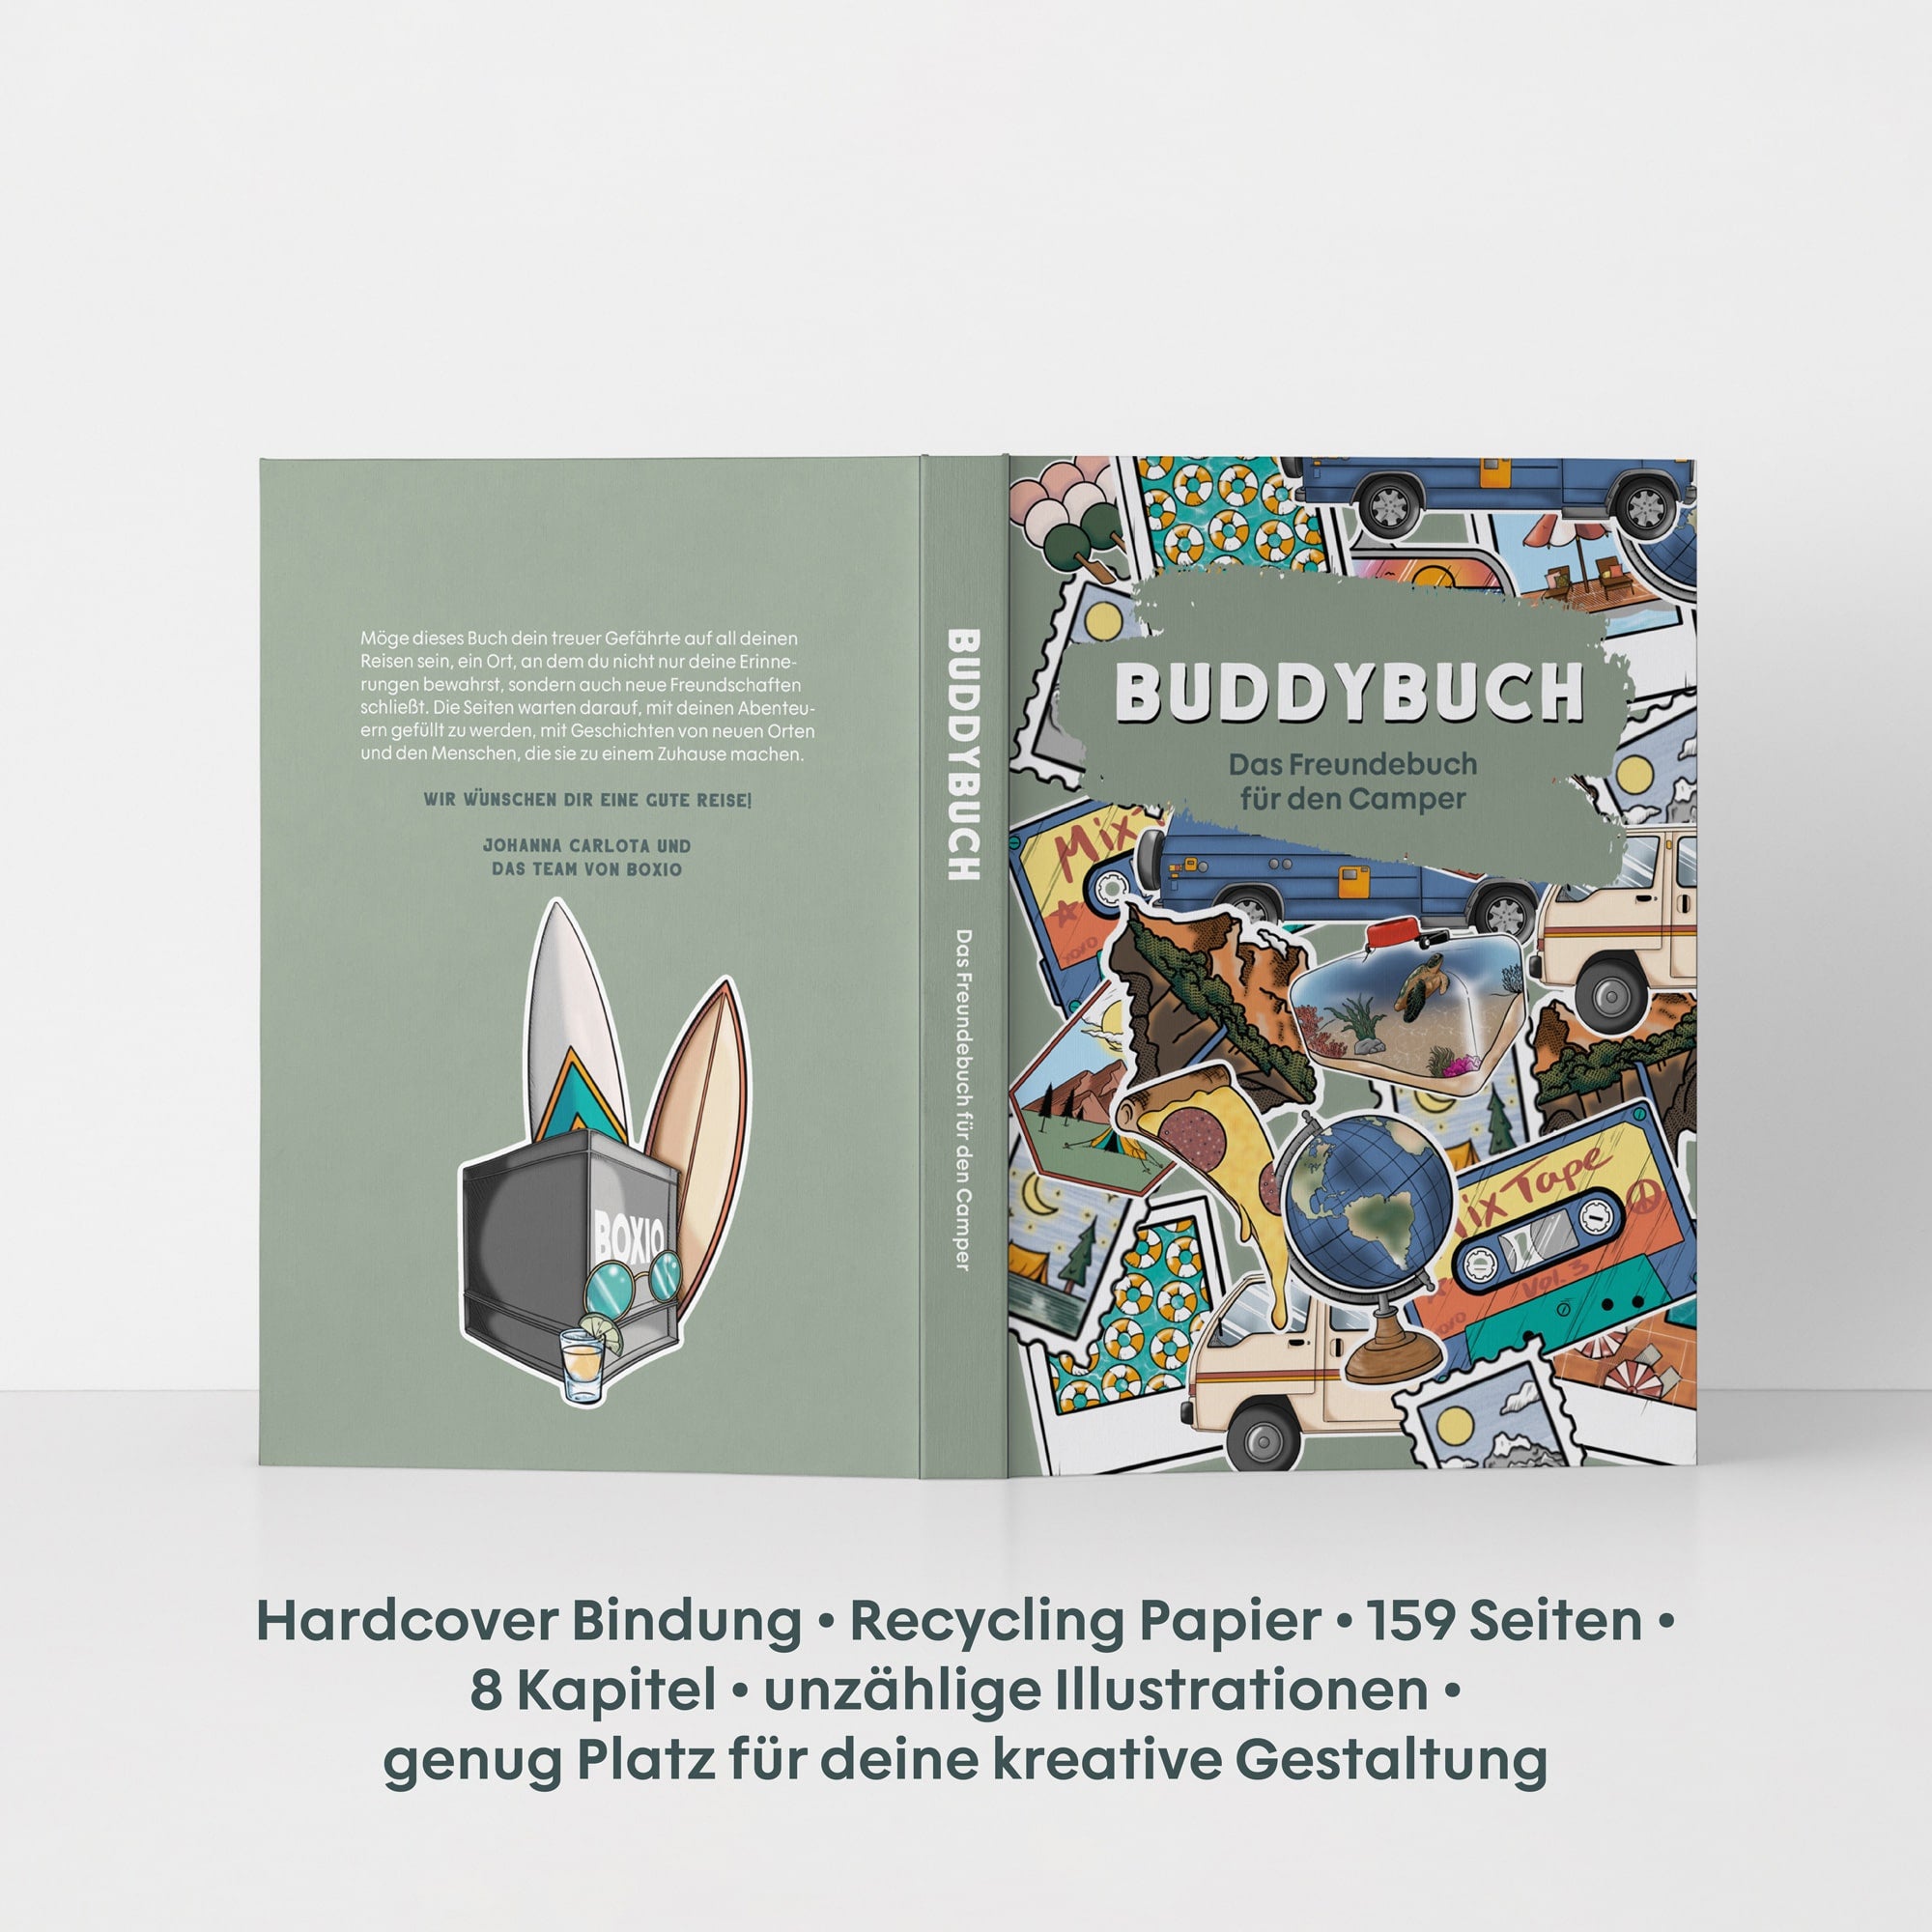 BUDDYBUCH - Het vriendenboek voor kampeerders